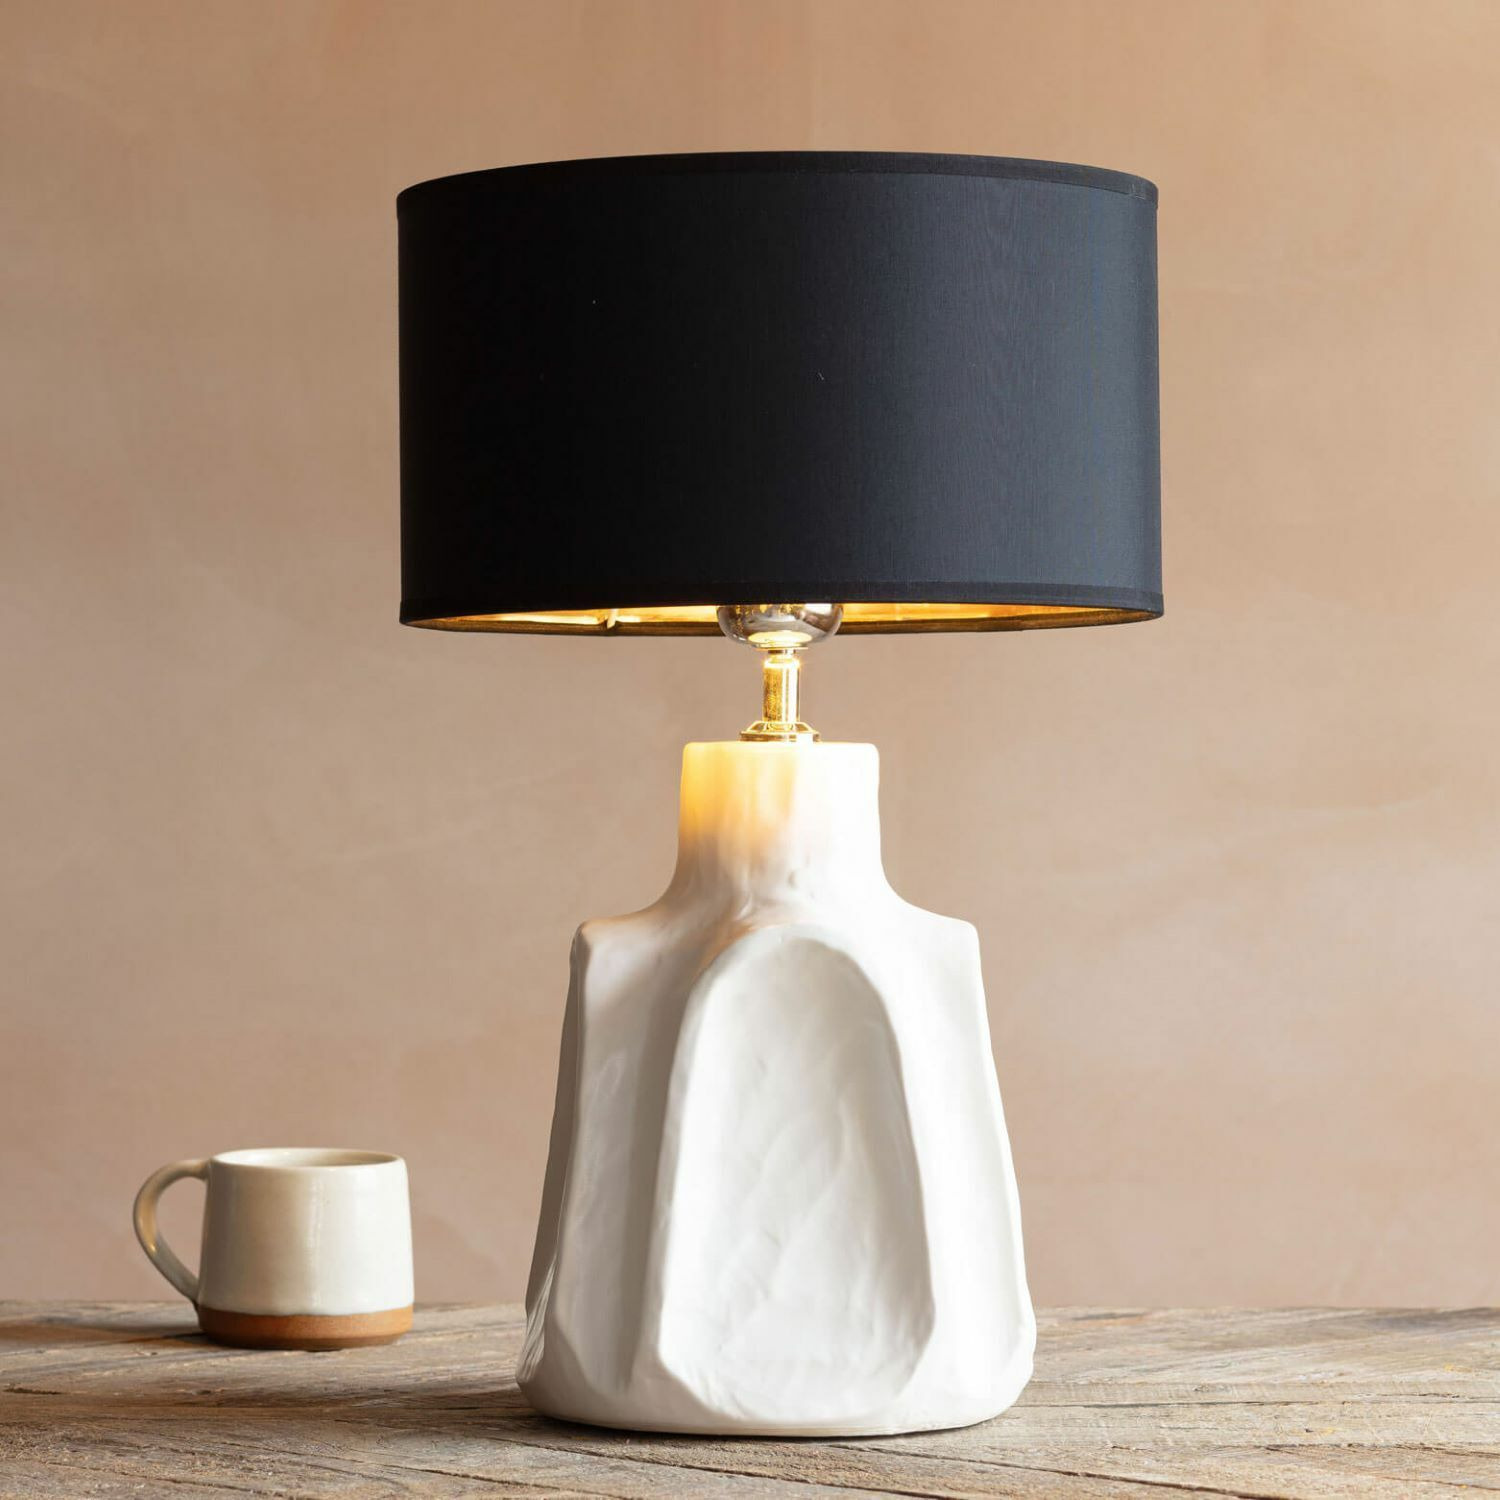 Axl Cream Ceramic Table Lamp - image 1